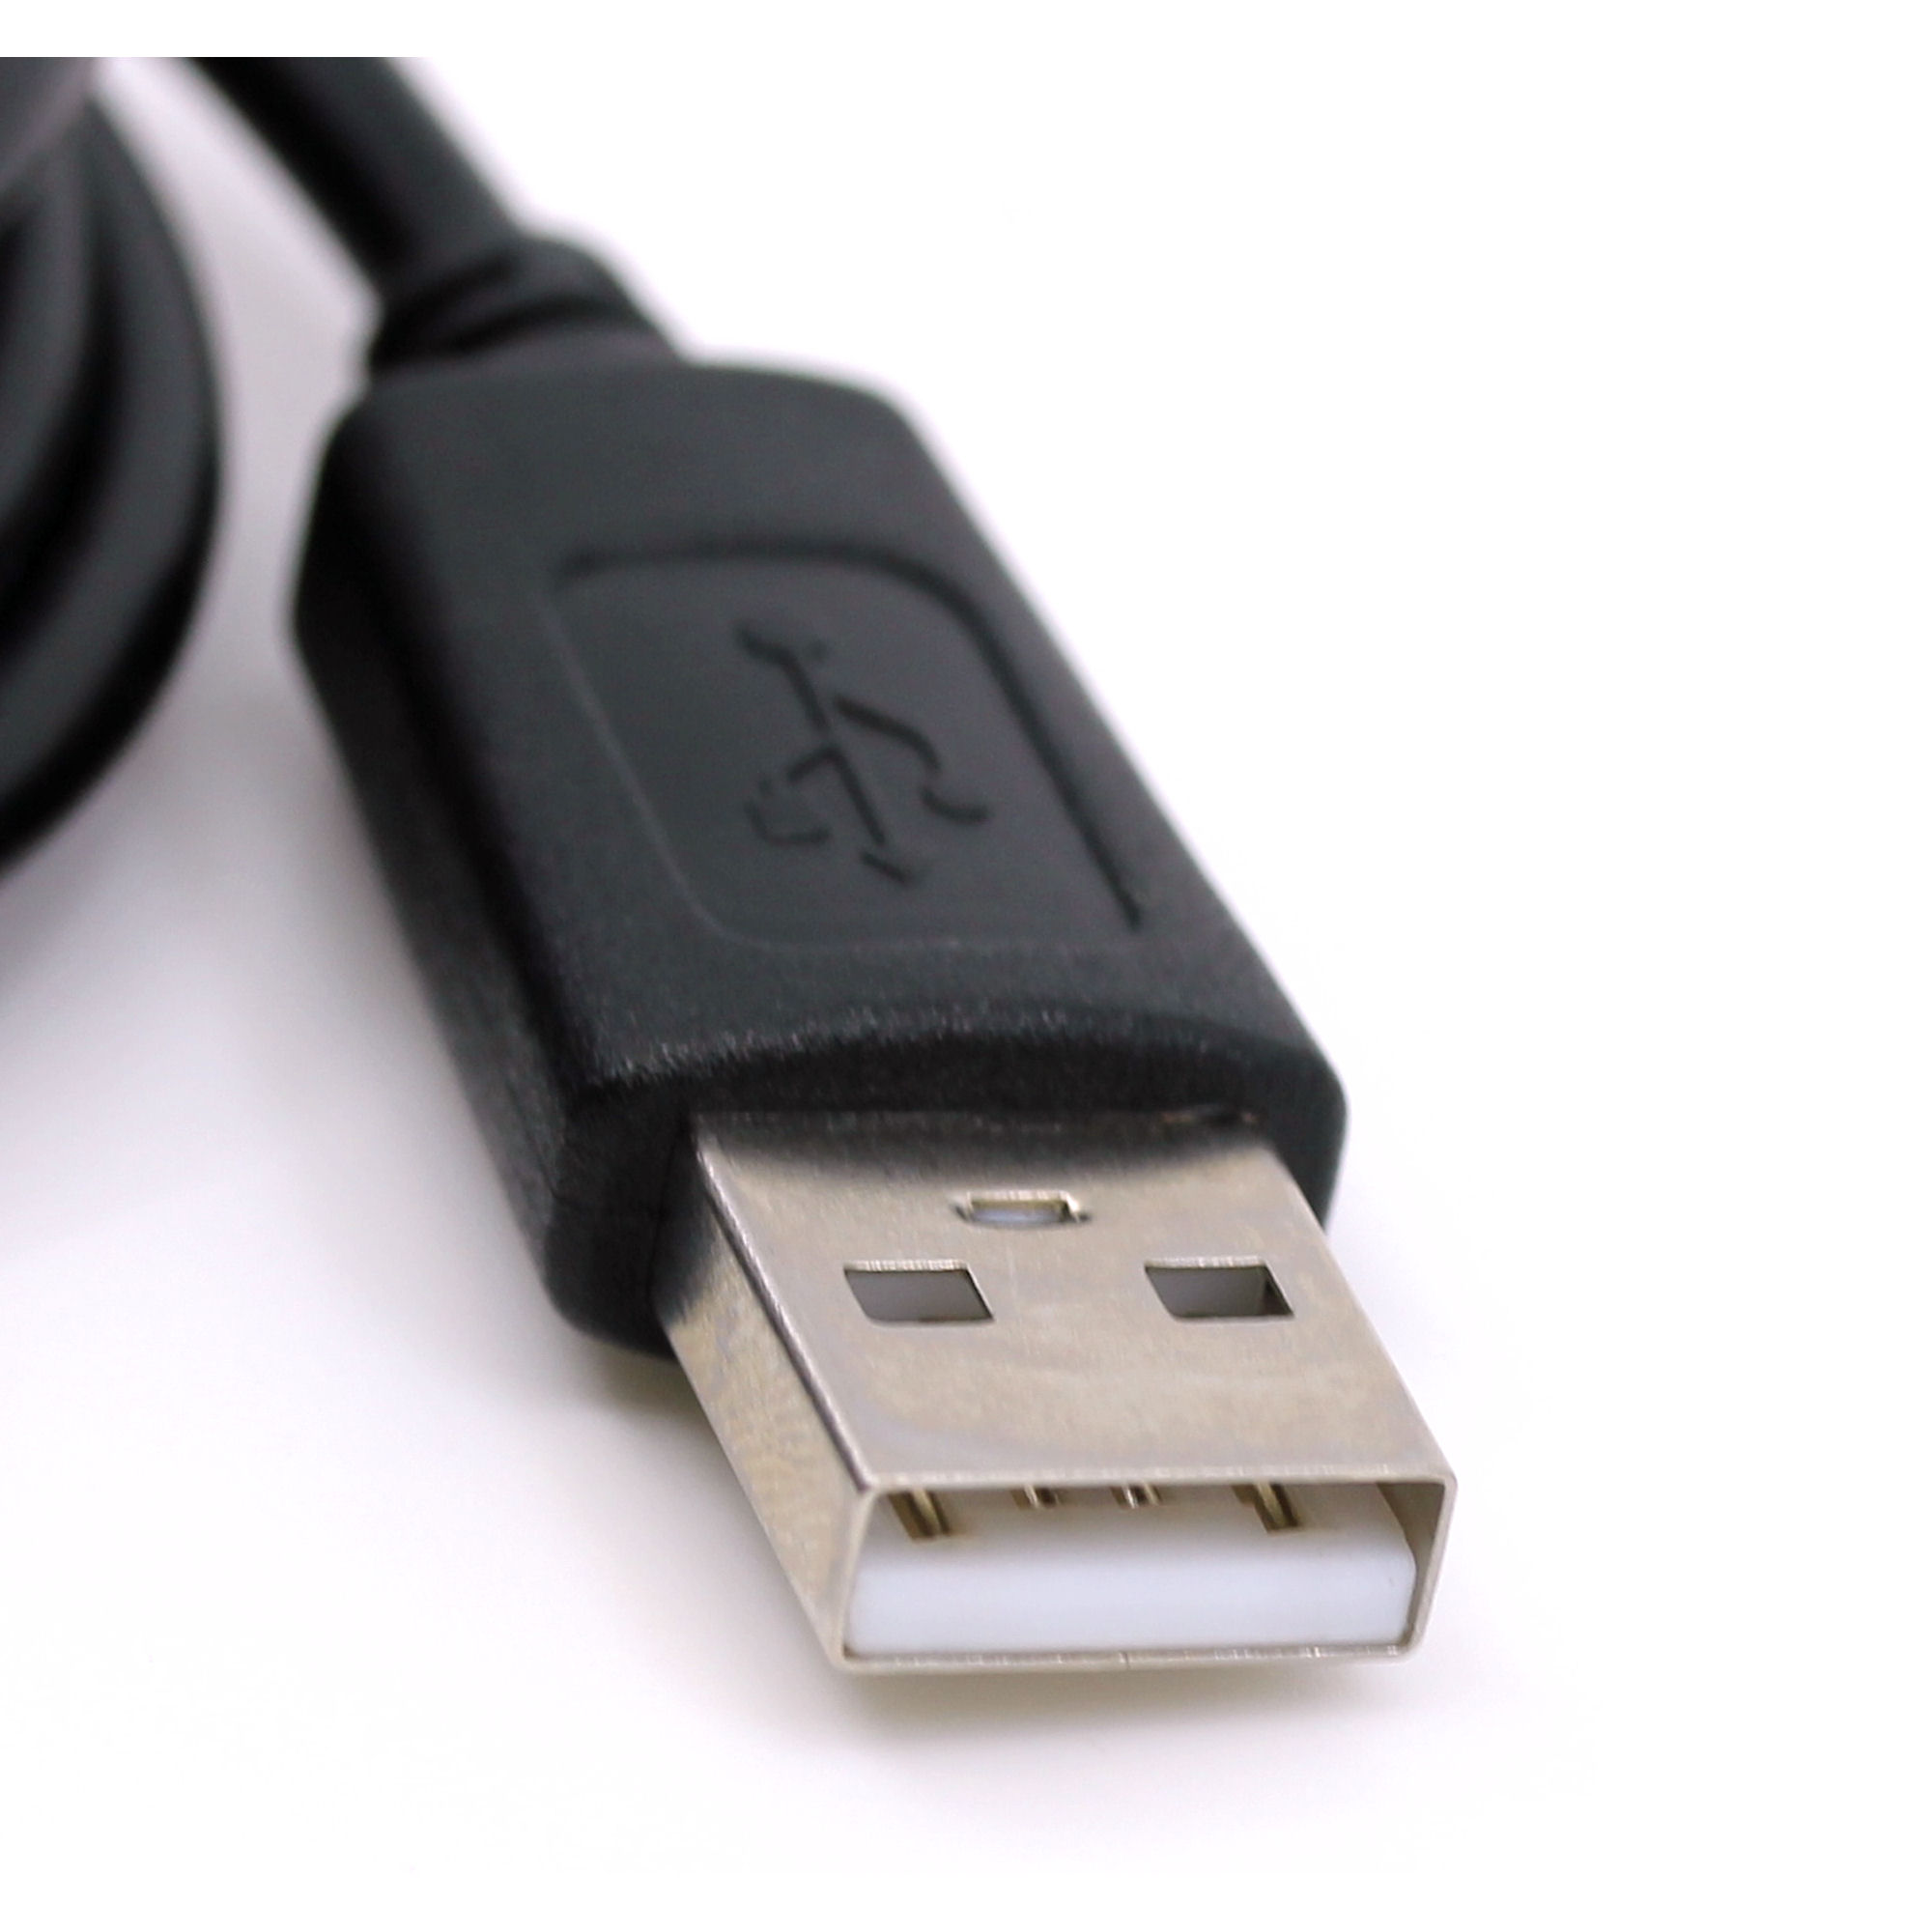 USB Datenkabel für Falk N30, N40, N50, N80, N100, N120, N150, N200, N220L, N240L, P250, P300, P320